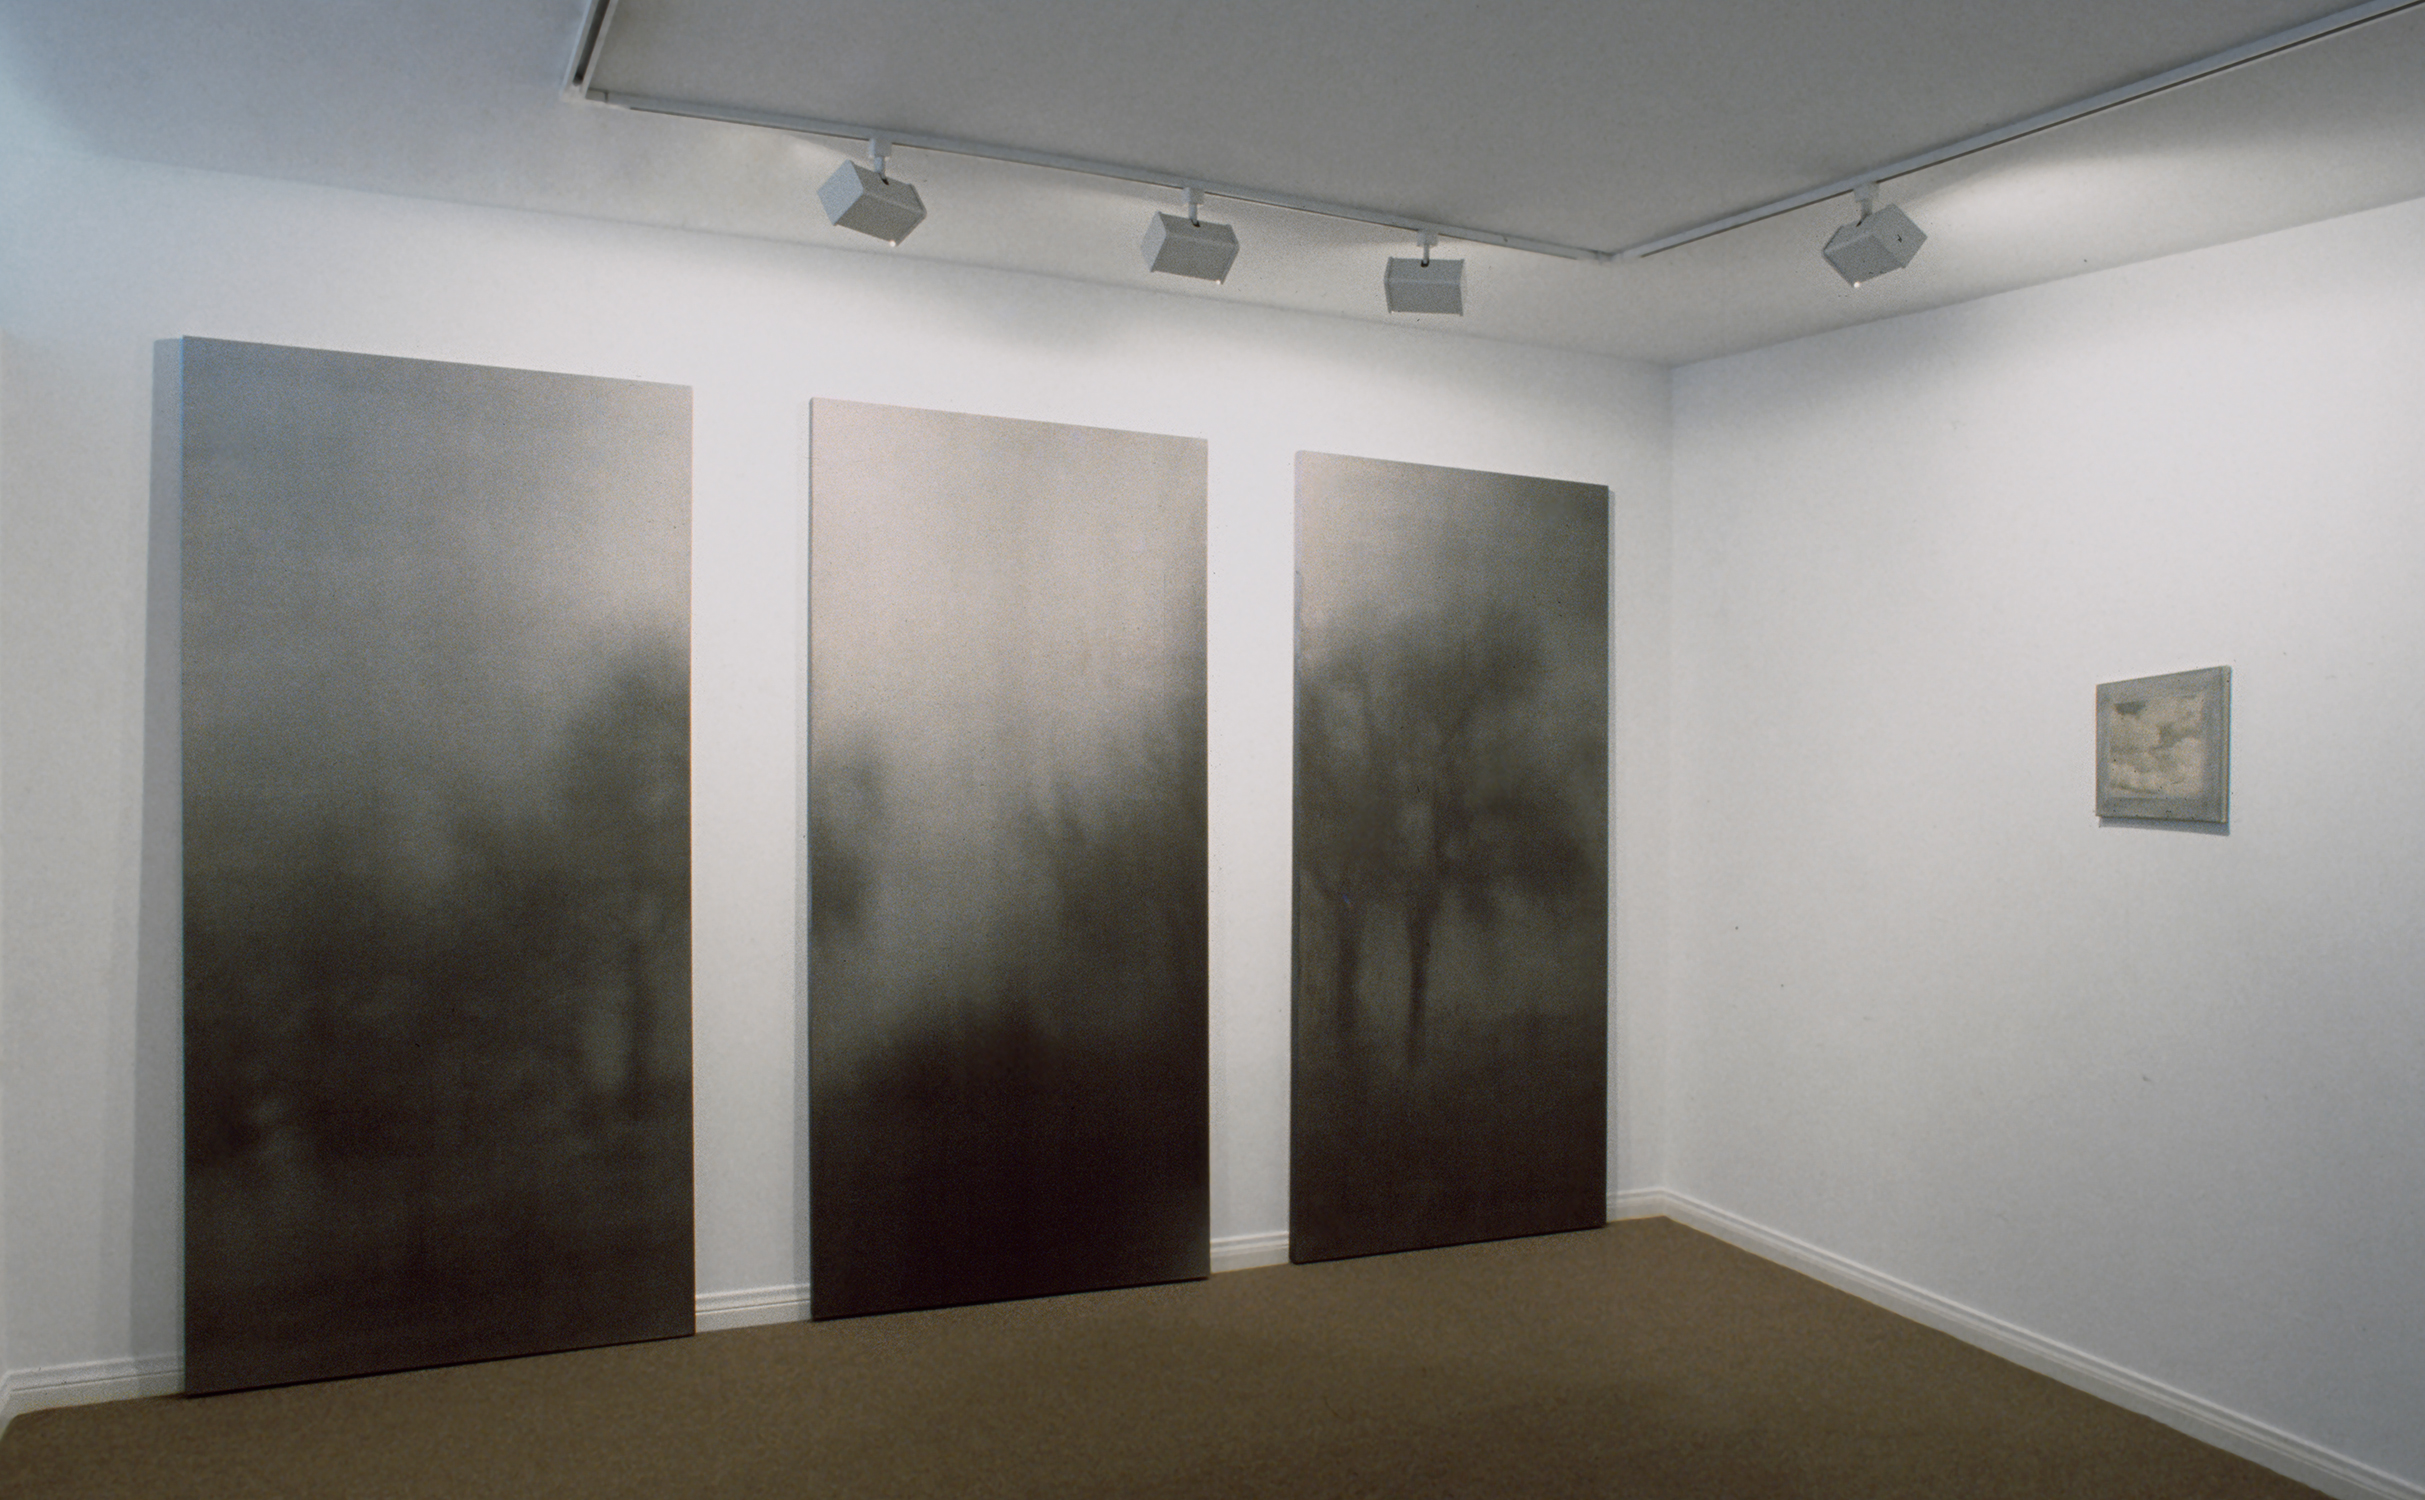  Jan Kesner Gallery, Los Angeles, 1989 